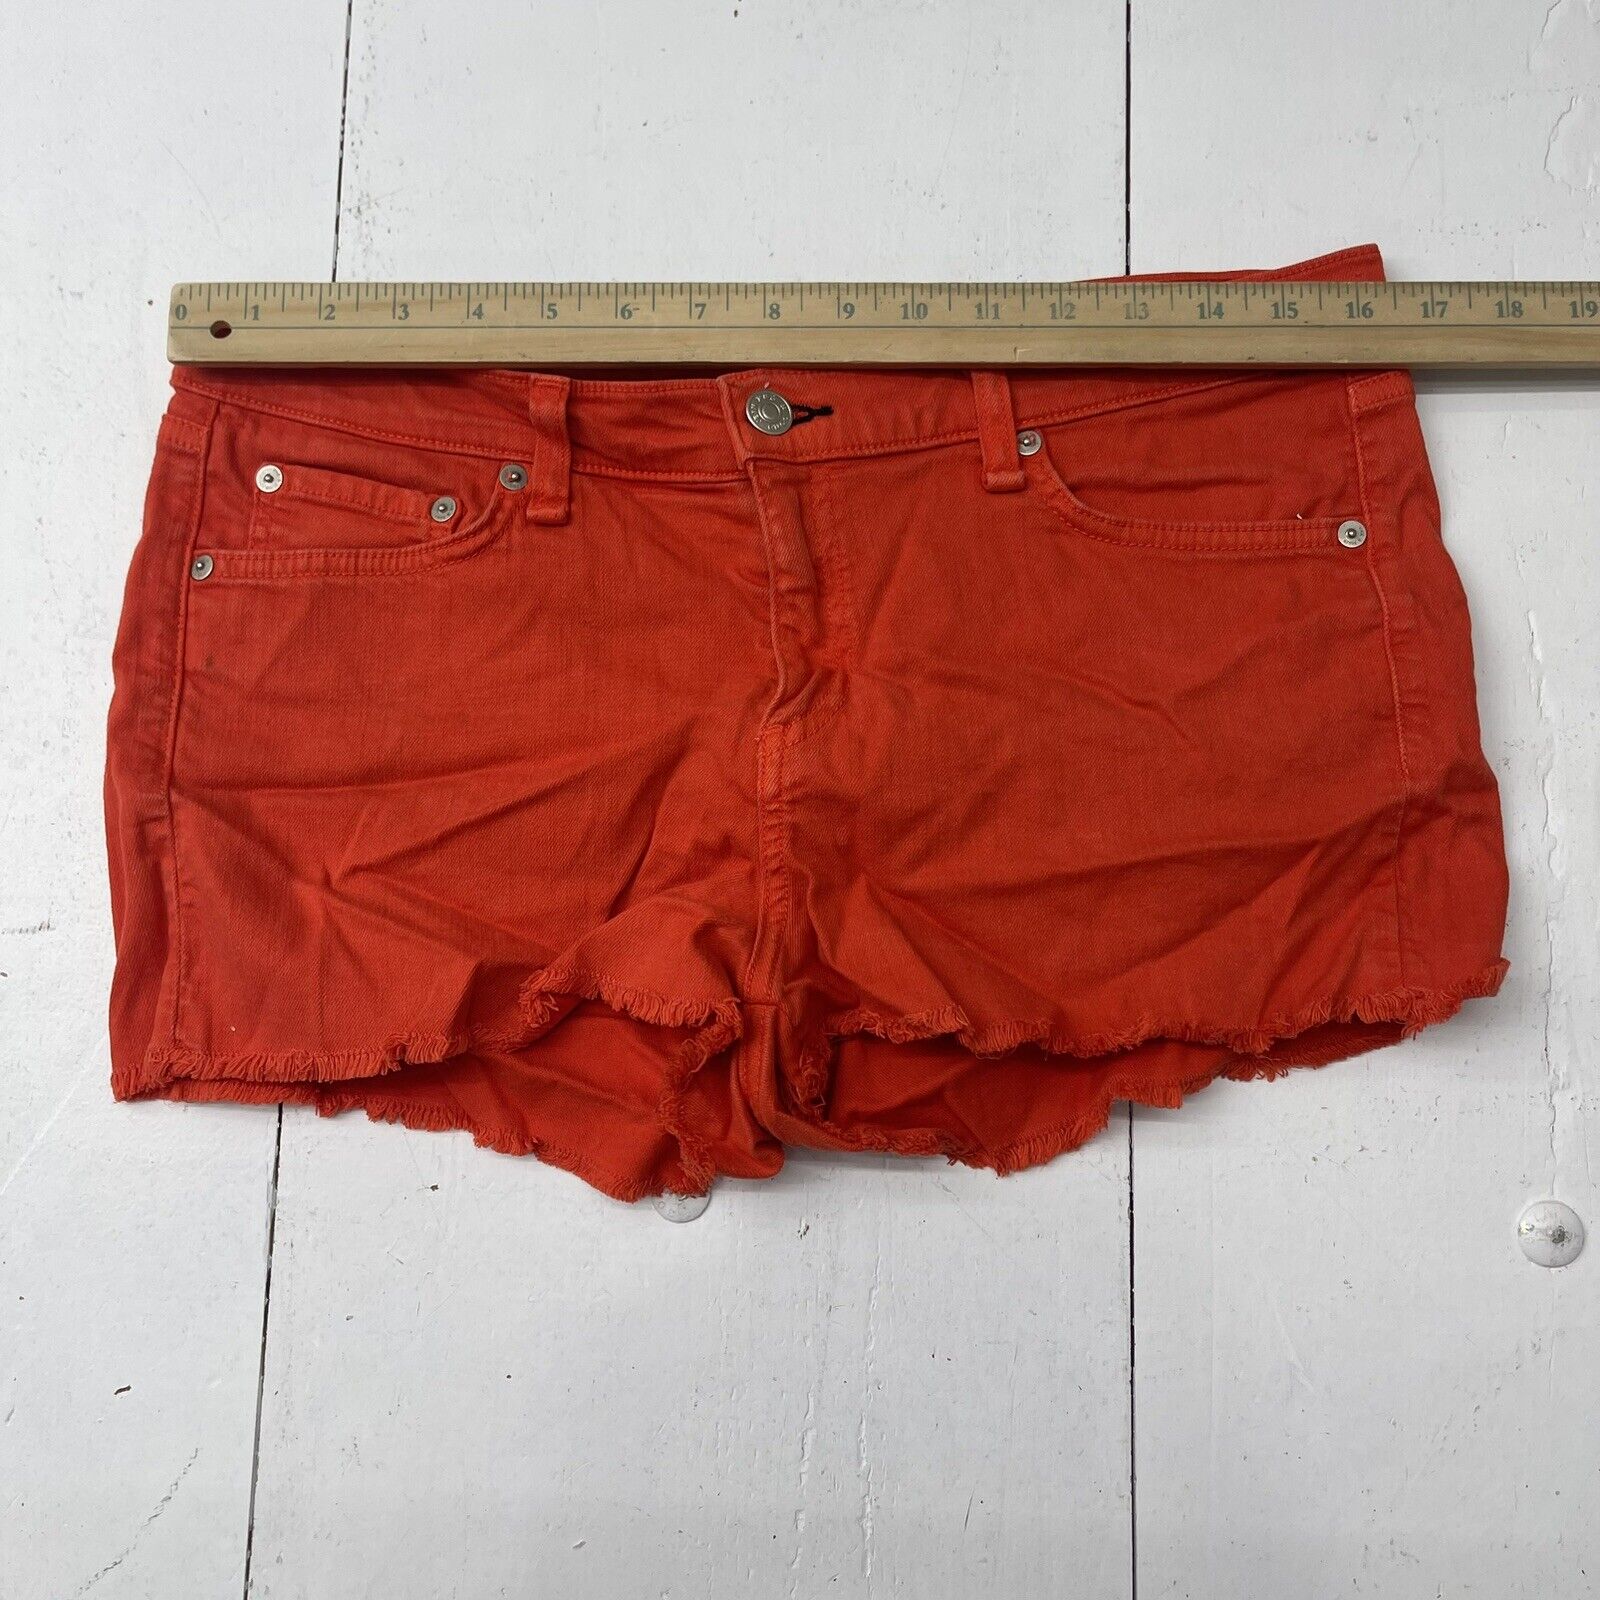 I Love H81 Cute Burnt Orange Denim Shorts Size 25,... - Depop